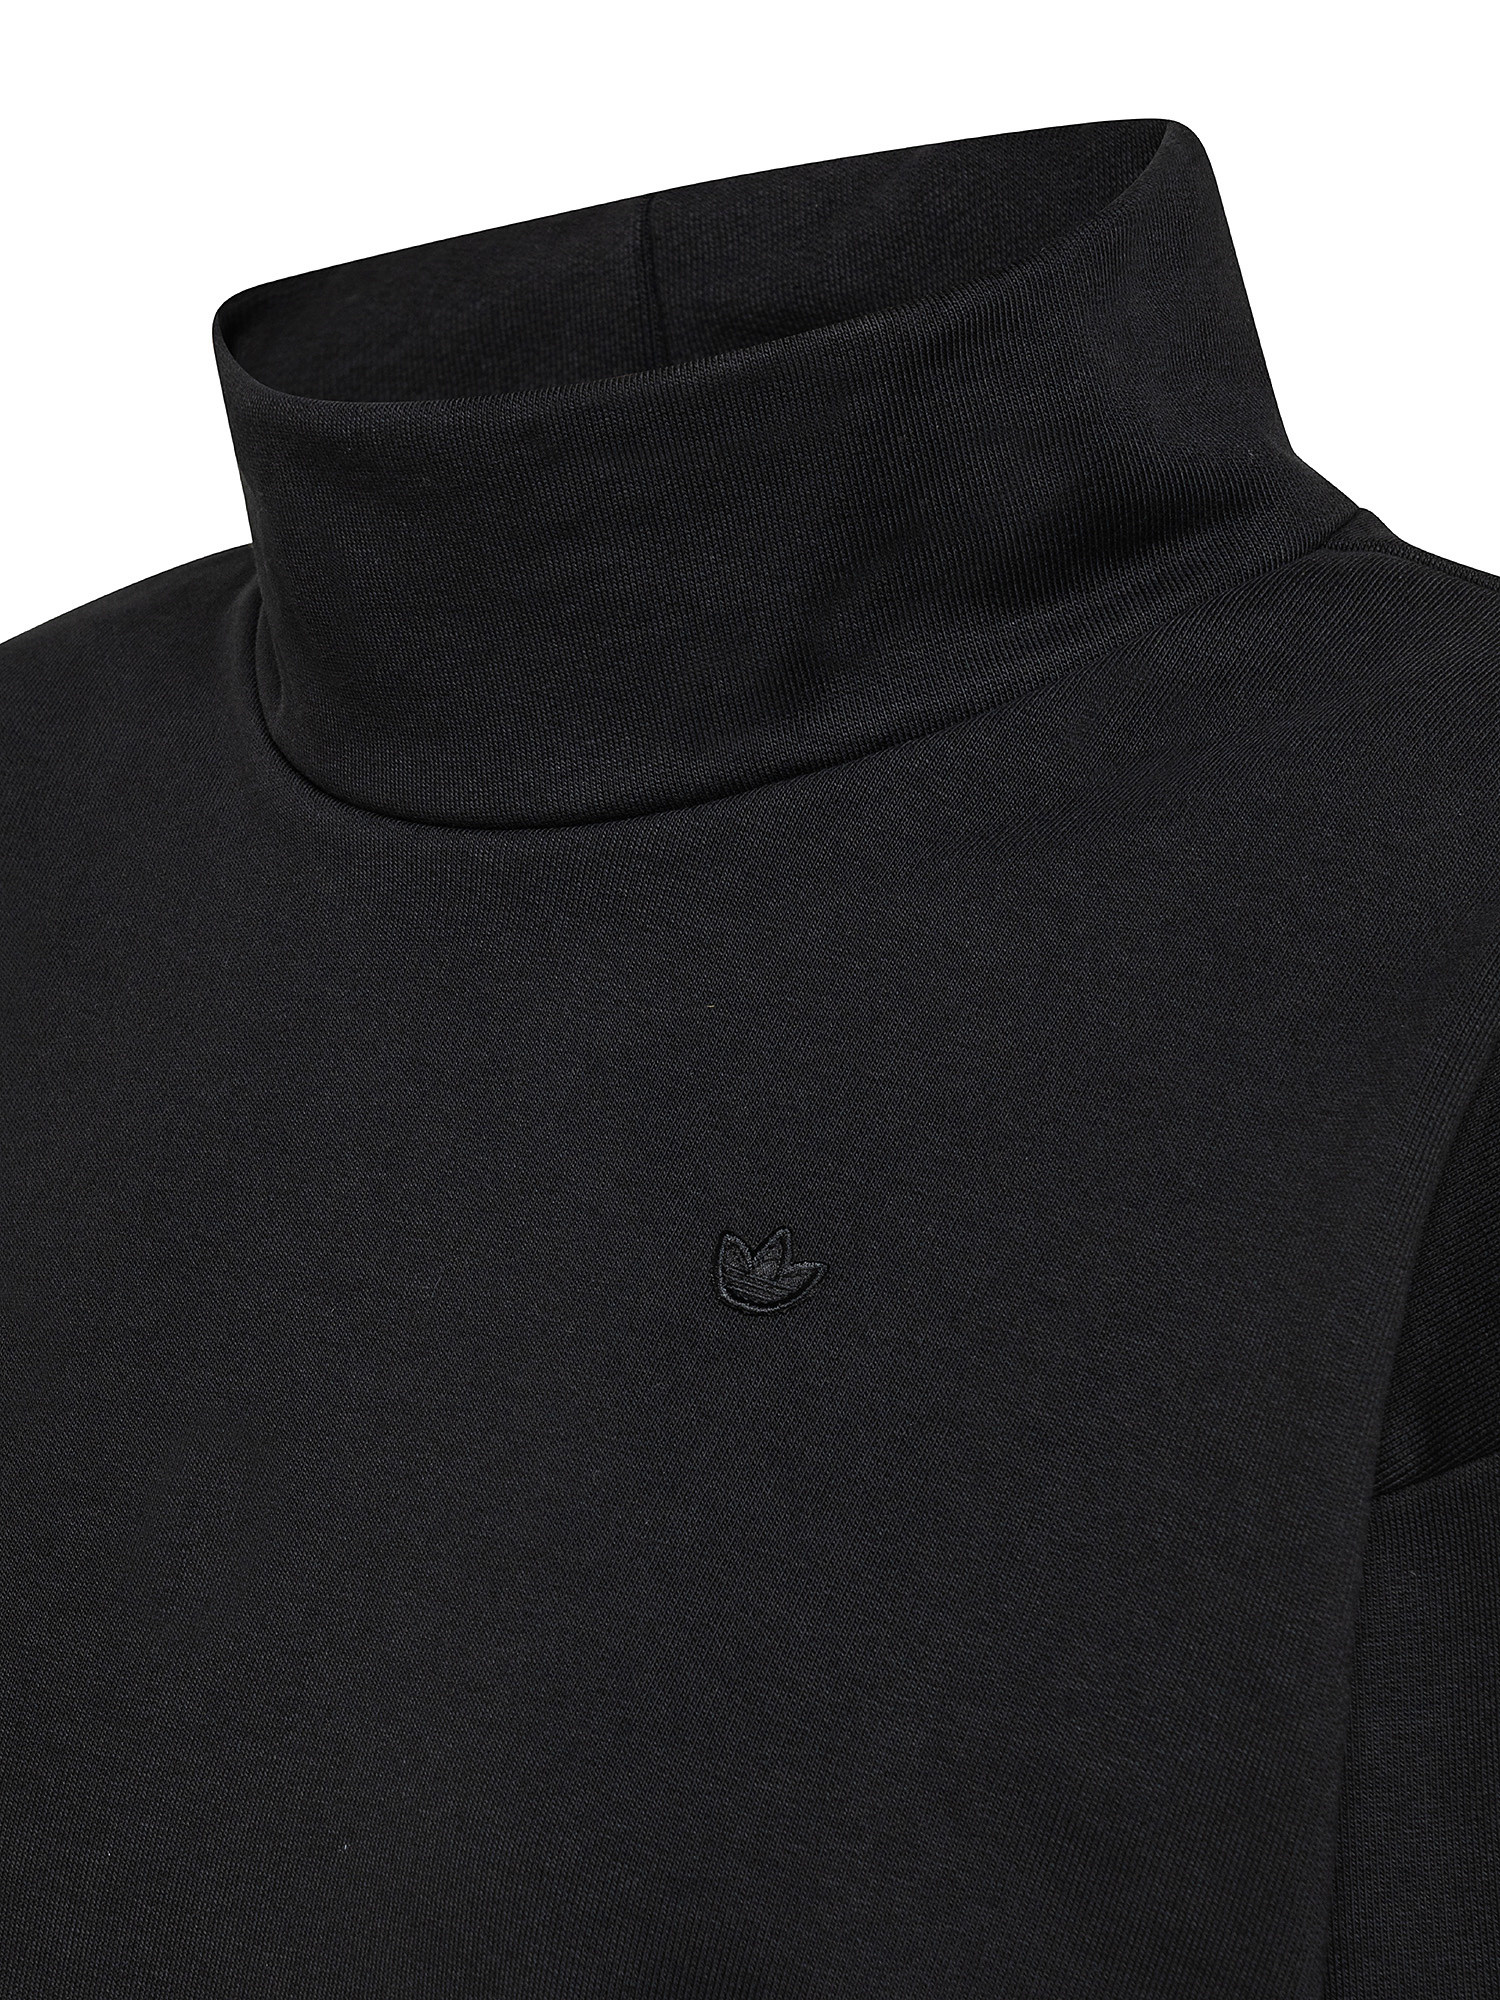 Adidas - Adicolor turtleneck sweatshirt, Black, large image number 2